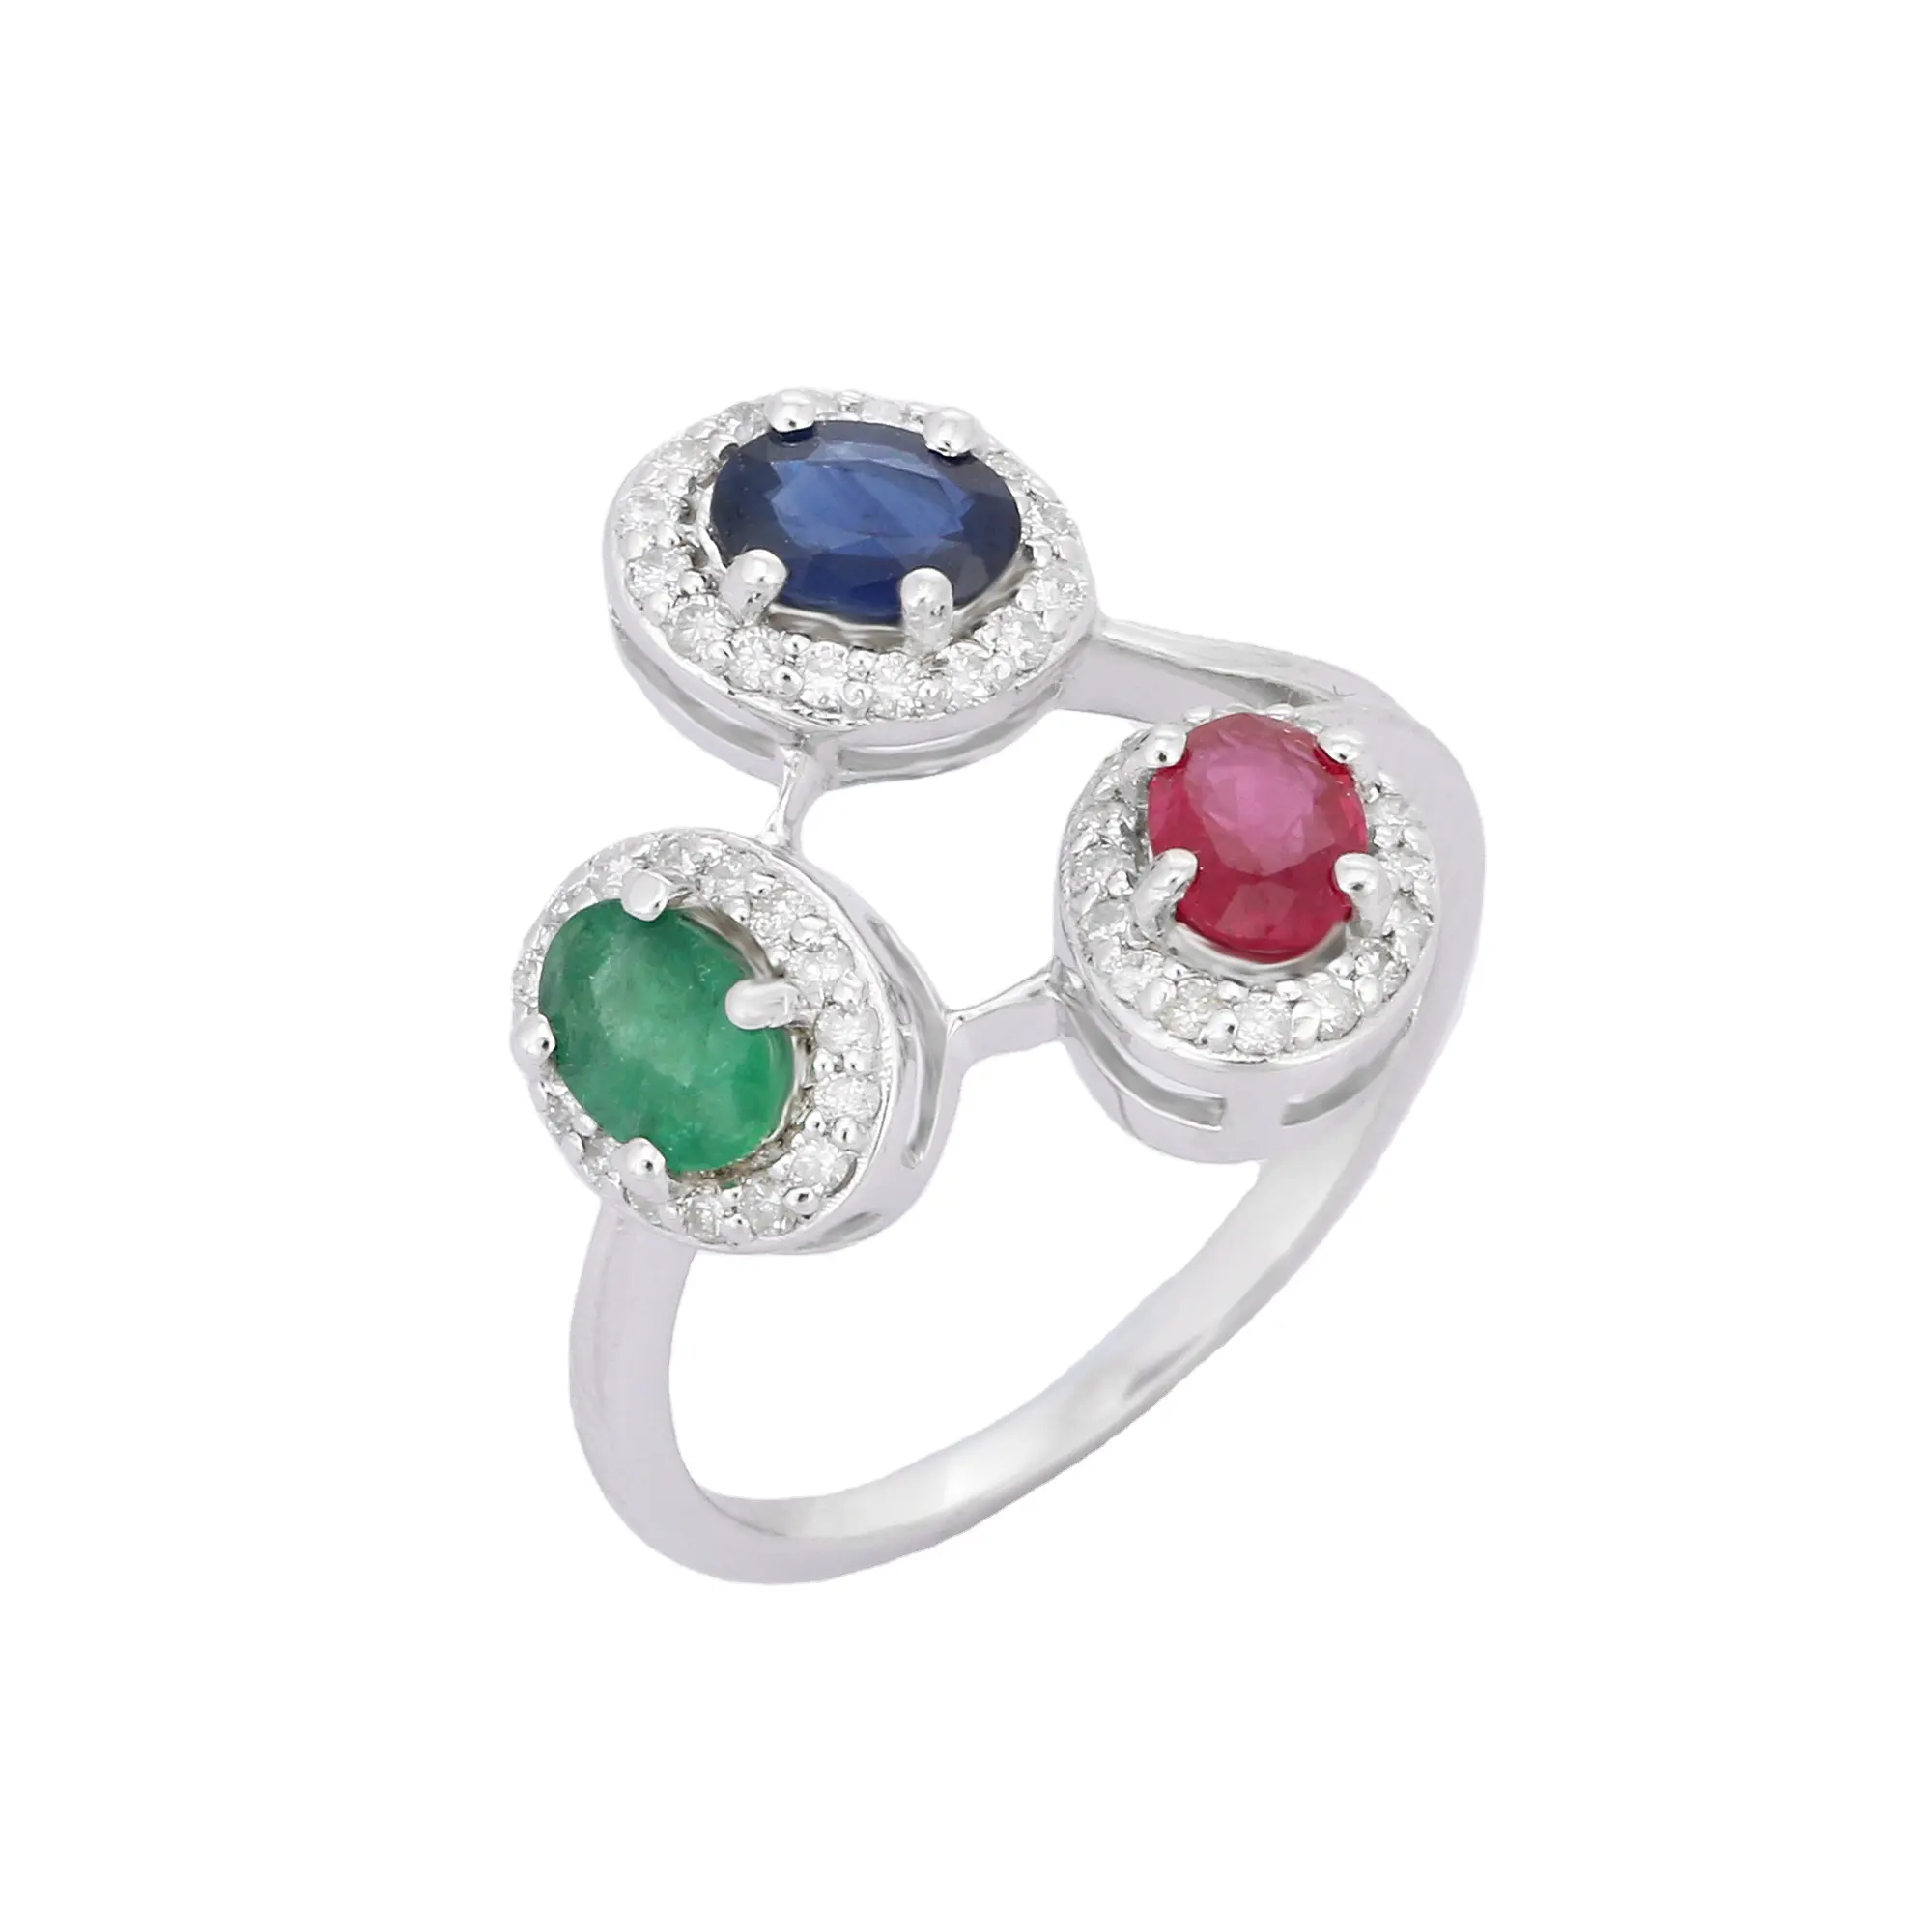 Trending-Anillo de Plata de Ley 925 con tres piedras, Esmeralda, rubí, zafiro azul, diamante, joya de compromiso, joyería hecha a mano